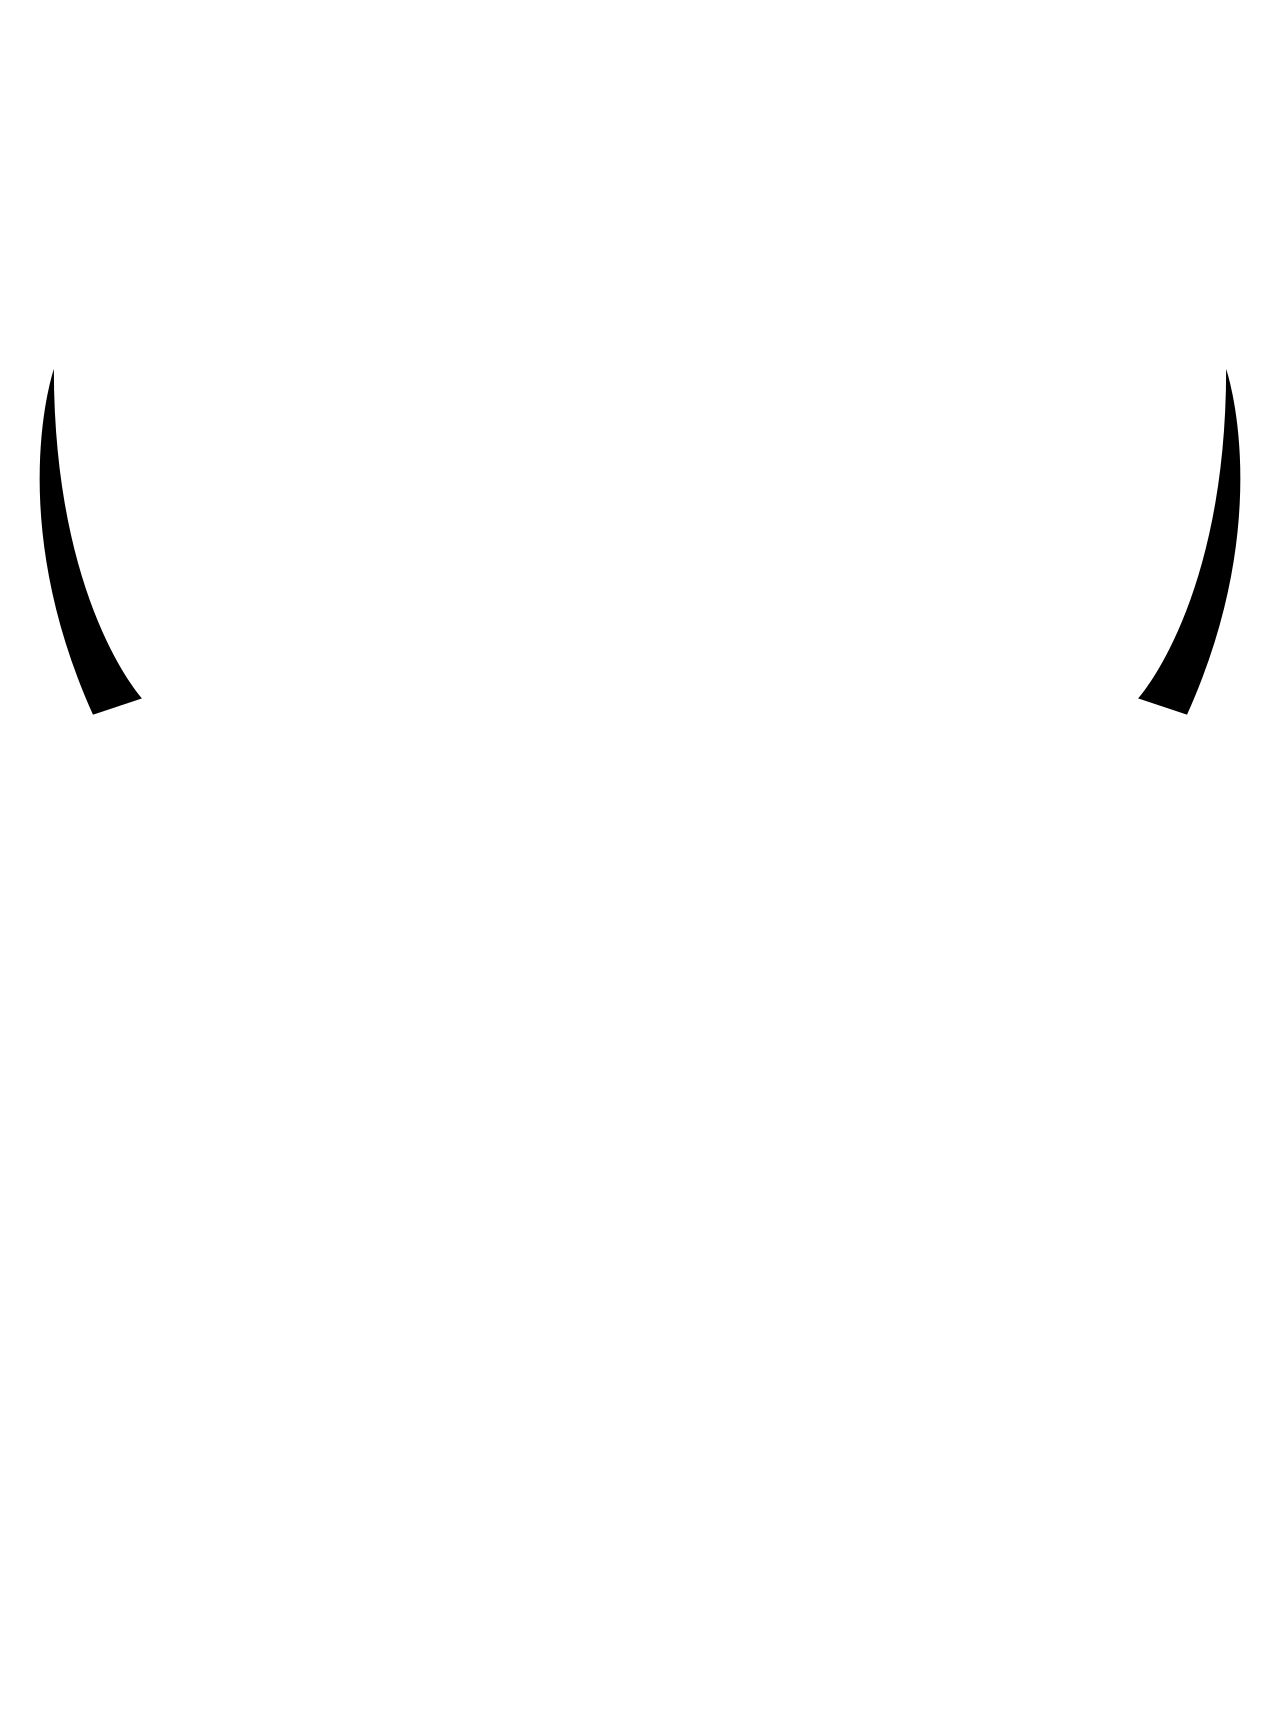 BULL's logo